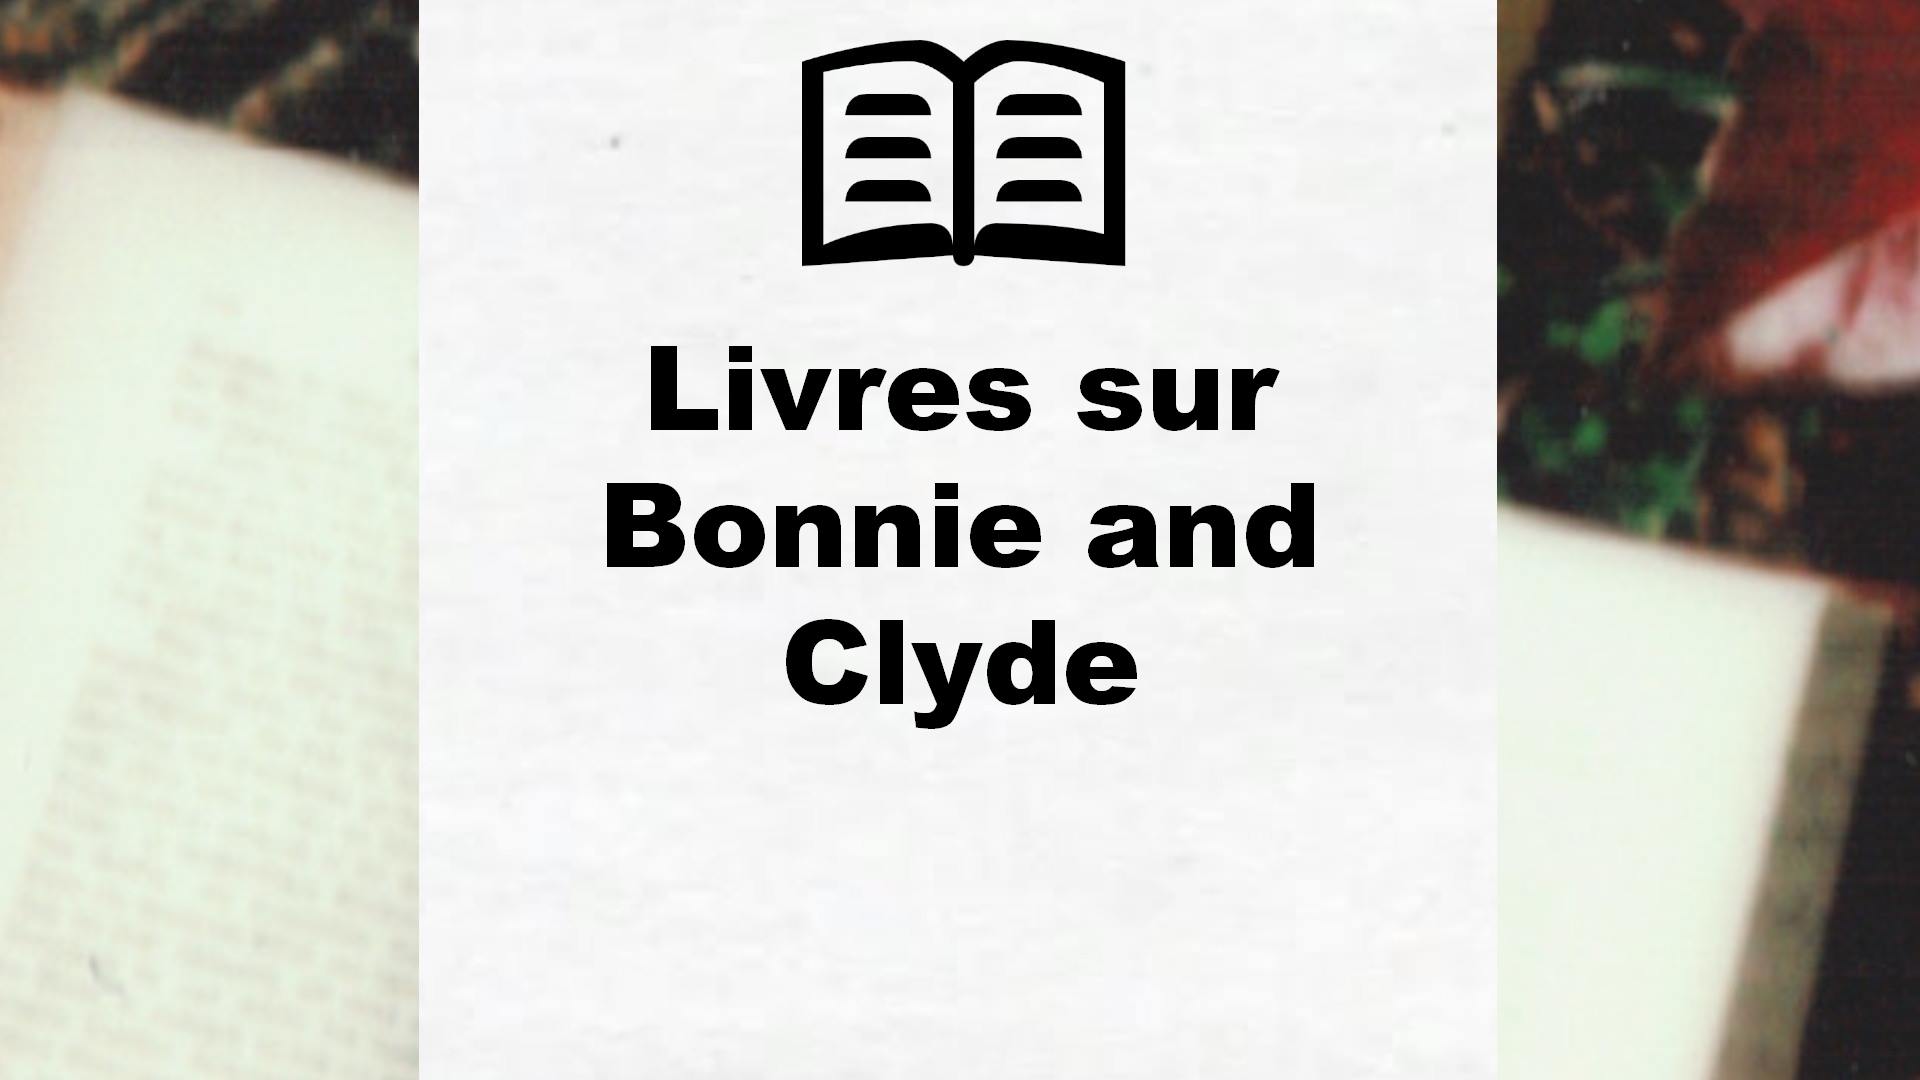 Livres sur Bonnie and Clyde